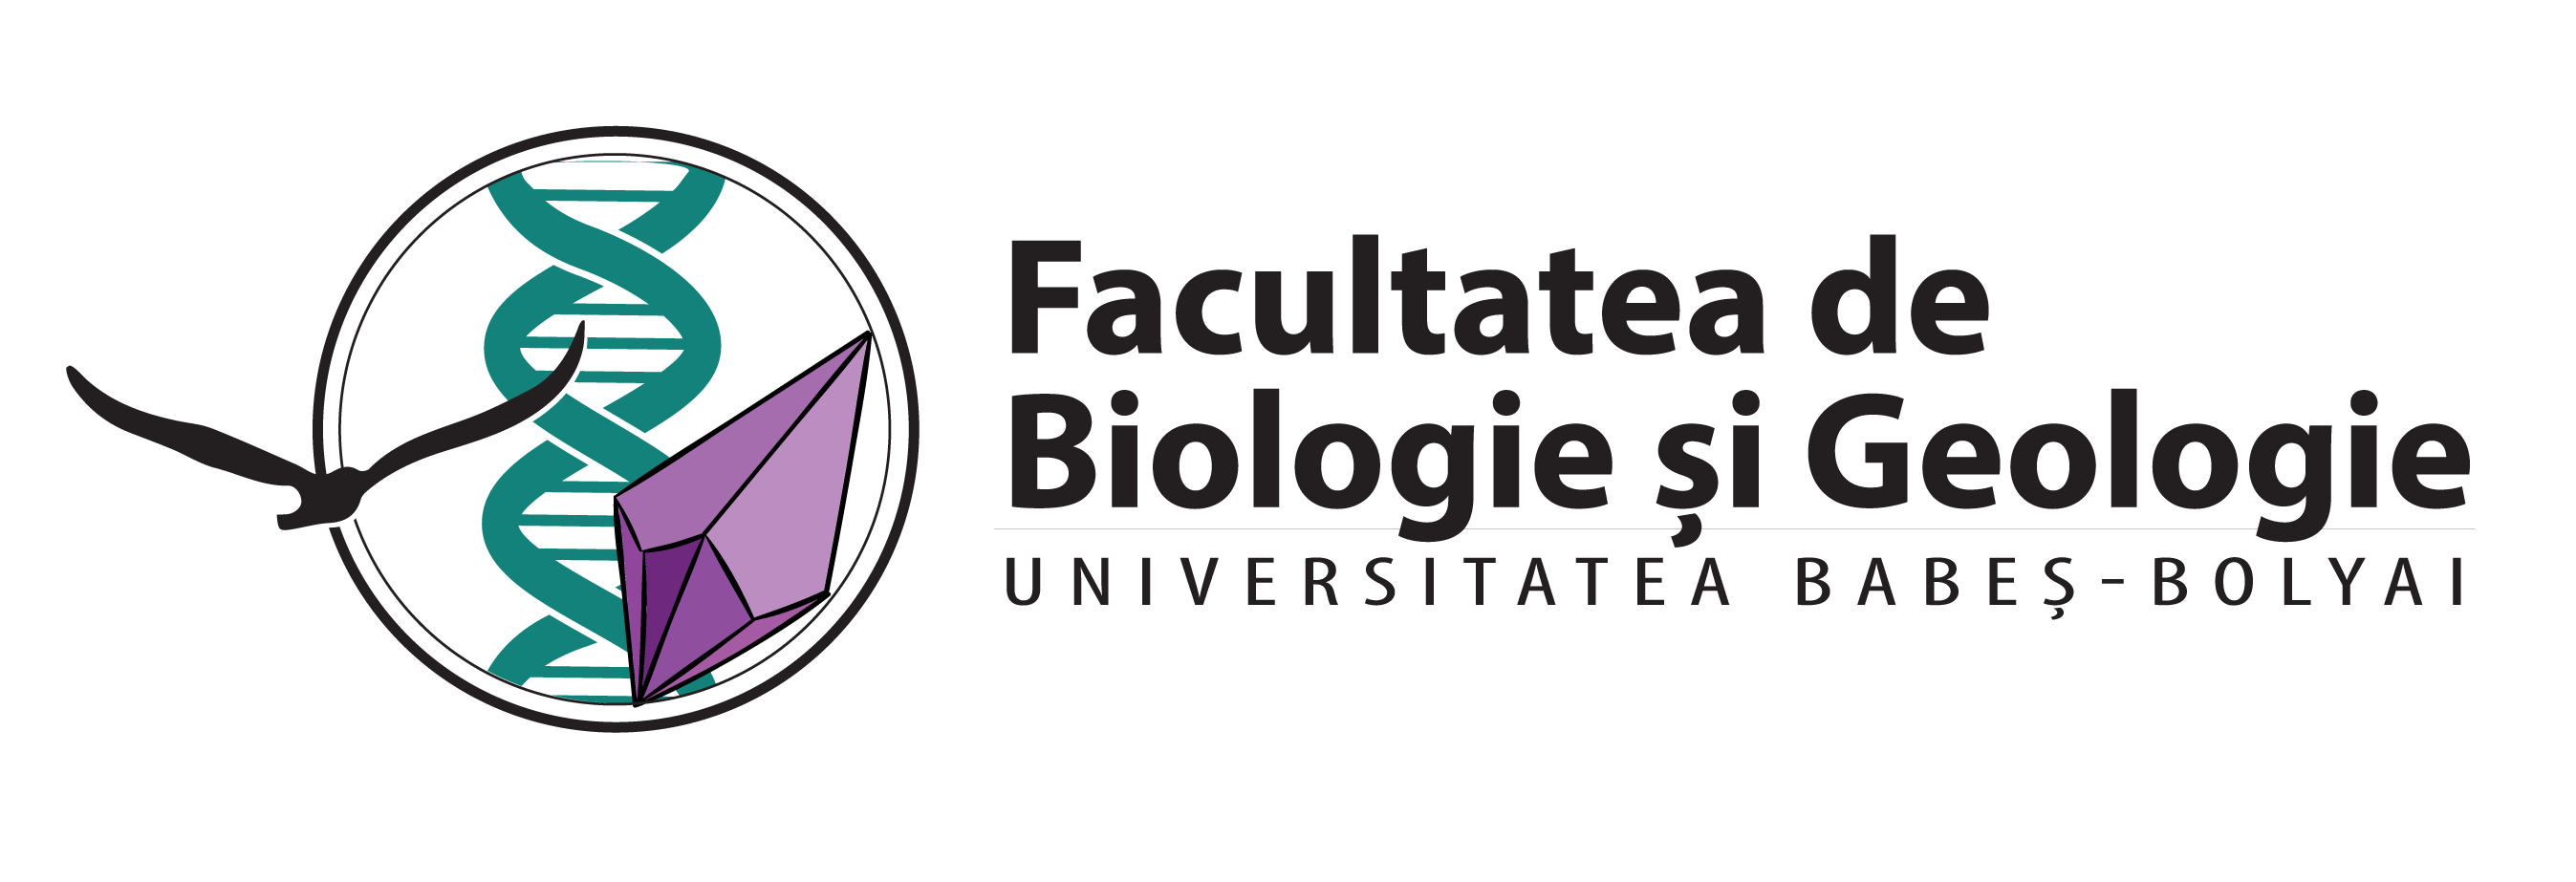 Logo Facultatea de Biologie si Geologie 2016 (2)